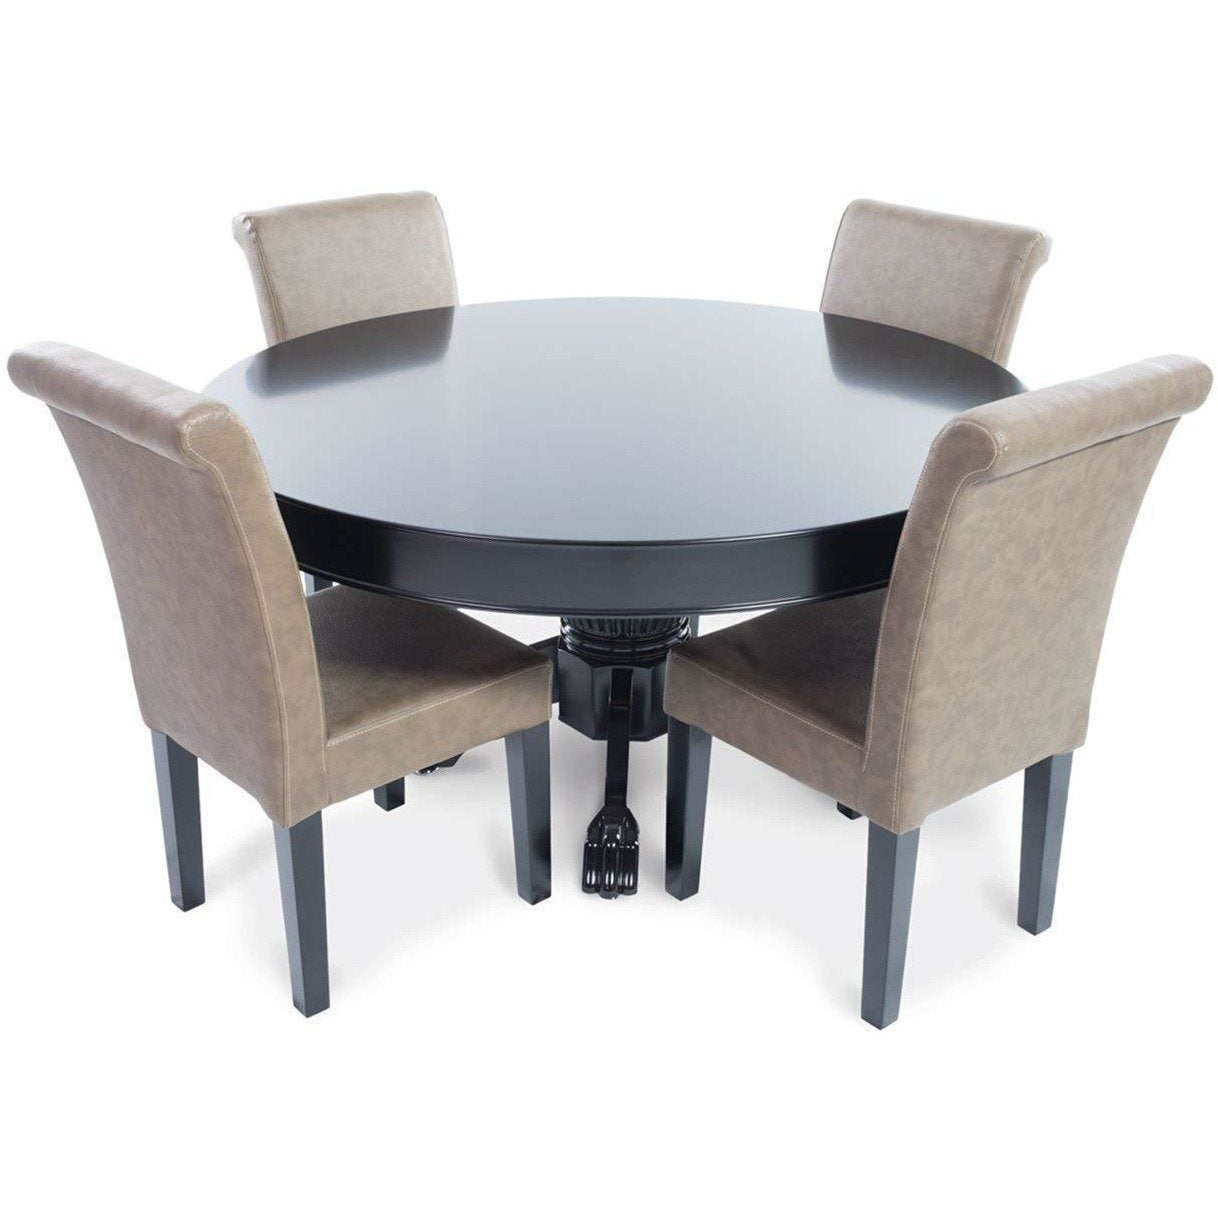 BBO Poker Tables Premium Lounge Poker Chair Set - Just Poker Tables